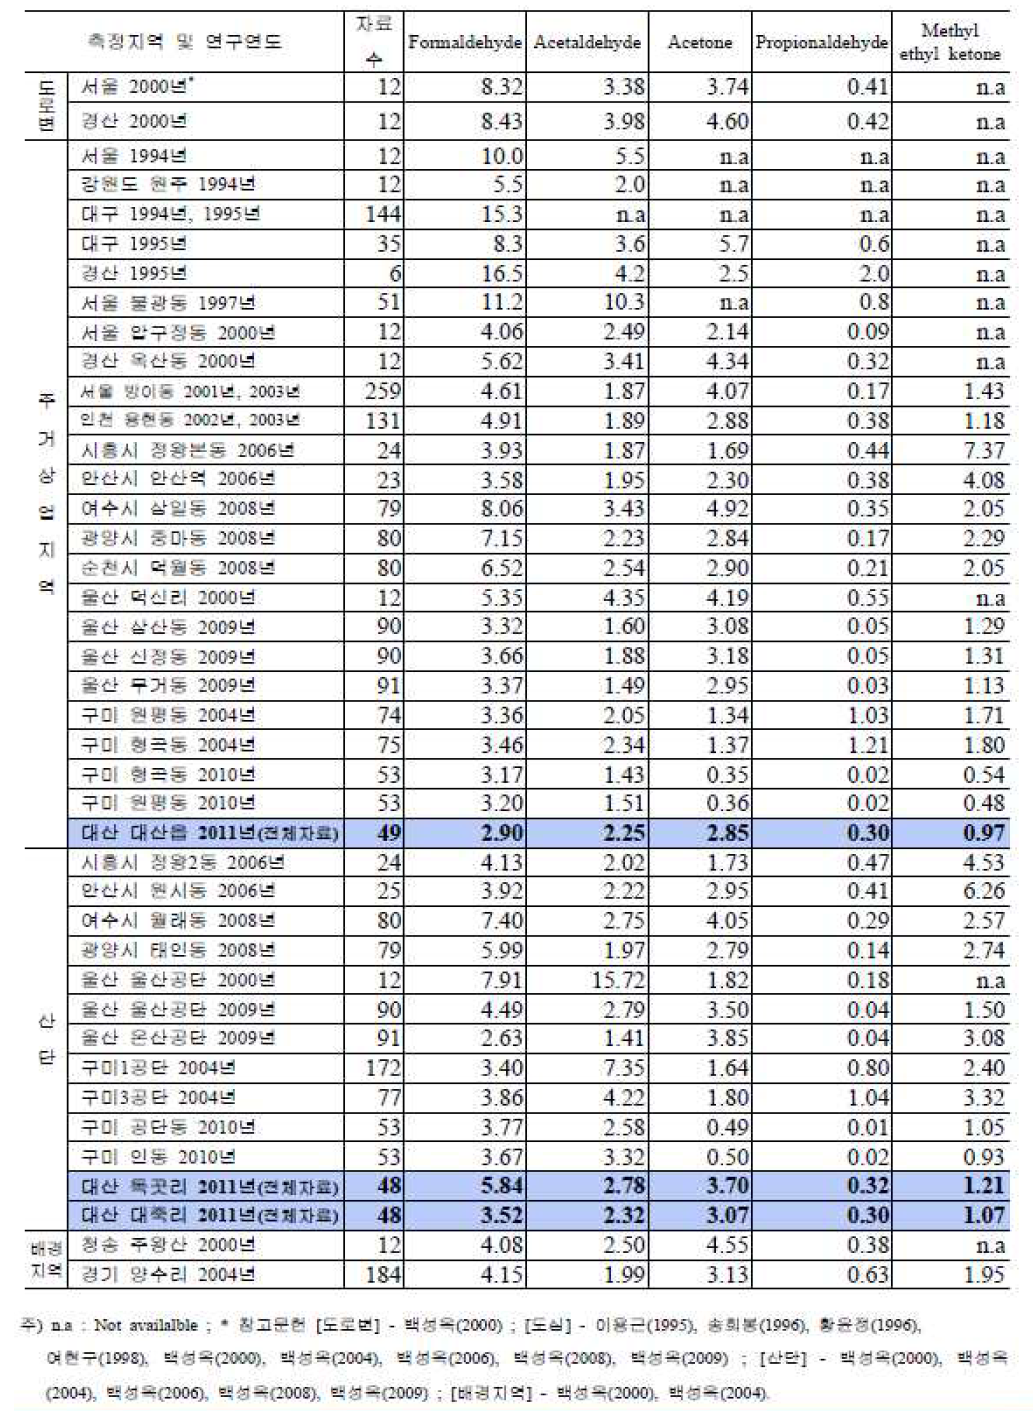 국내 타 지역과 대산지역 카보닐화합물 농도의 비교-연간자료(4계절)